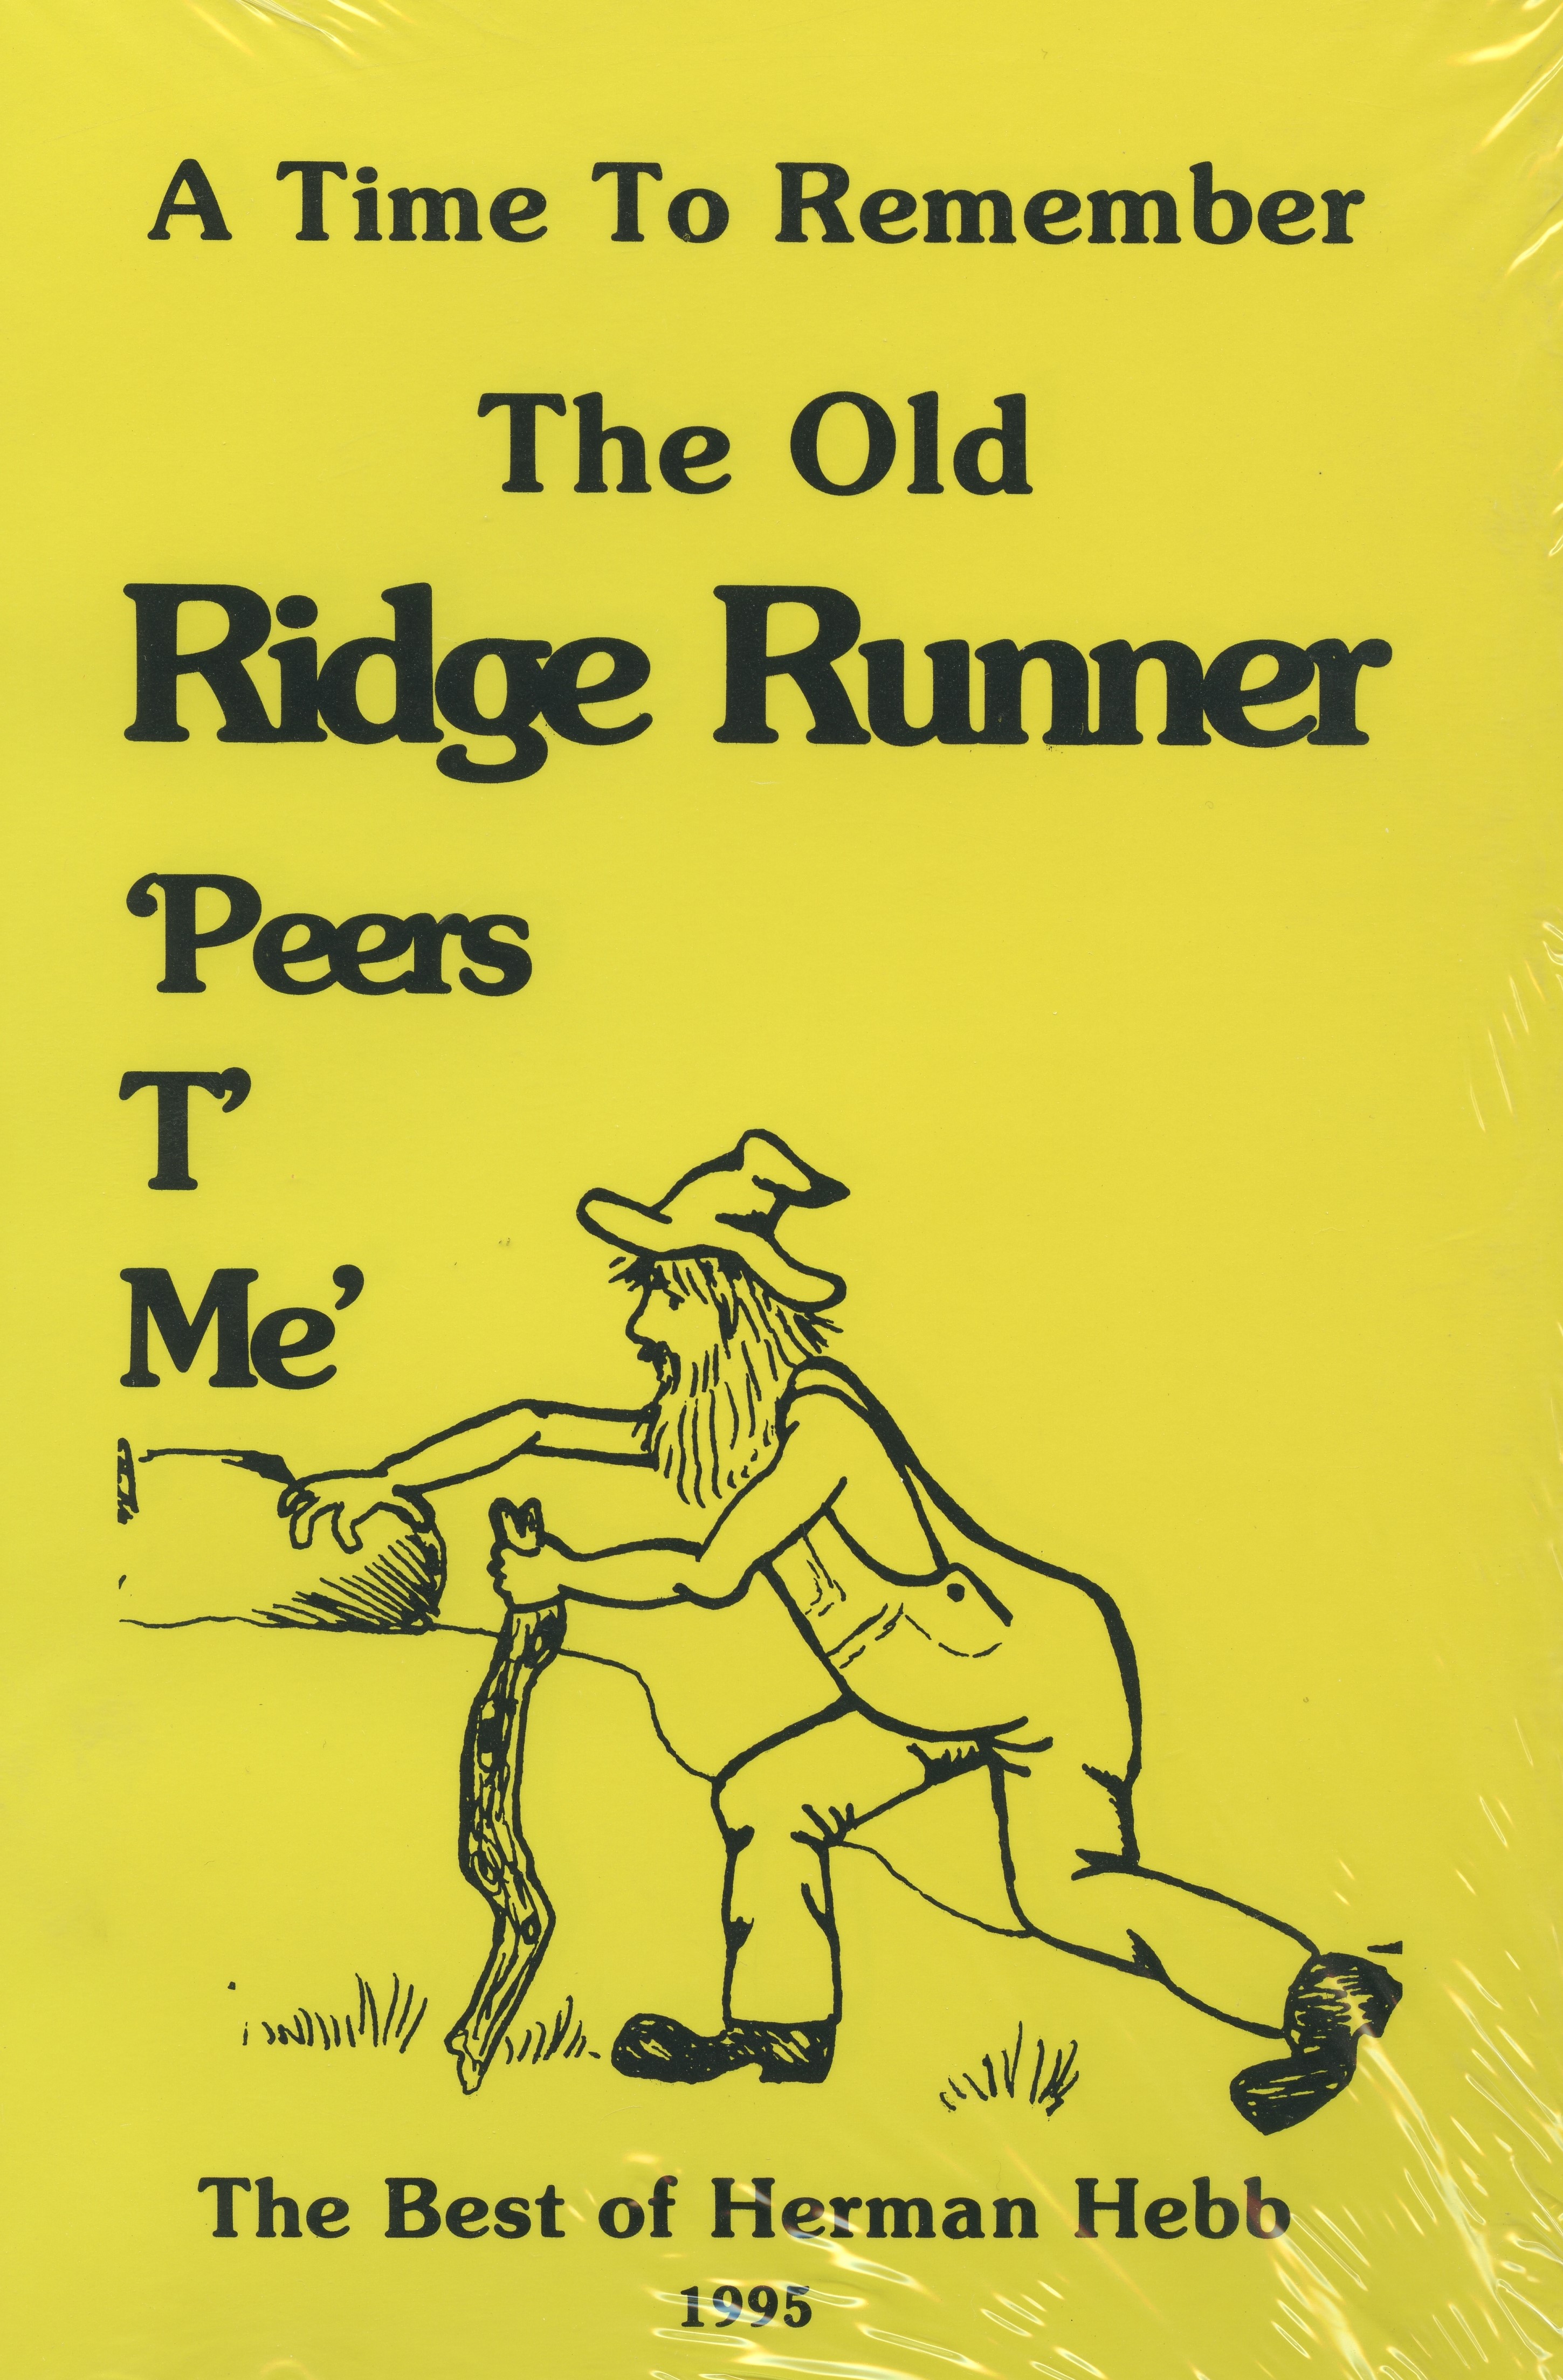 The Old Ridge Runner